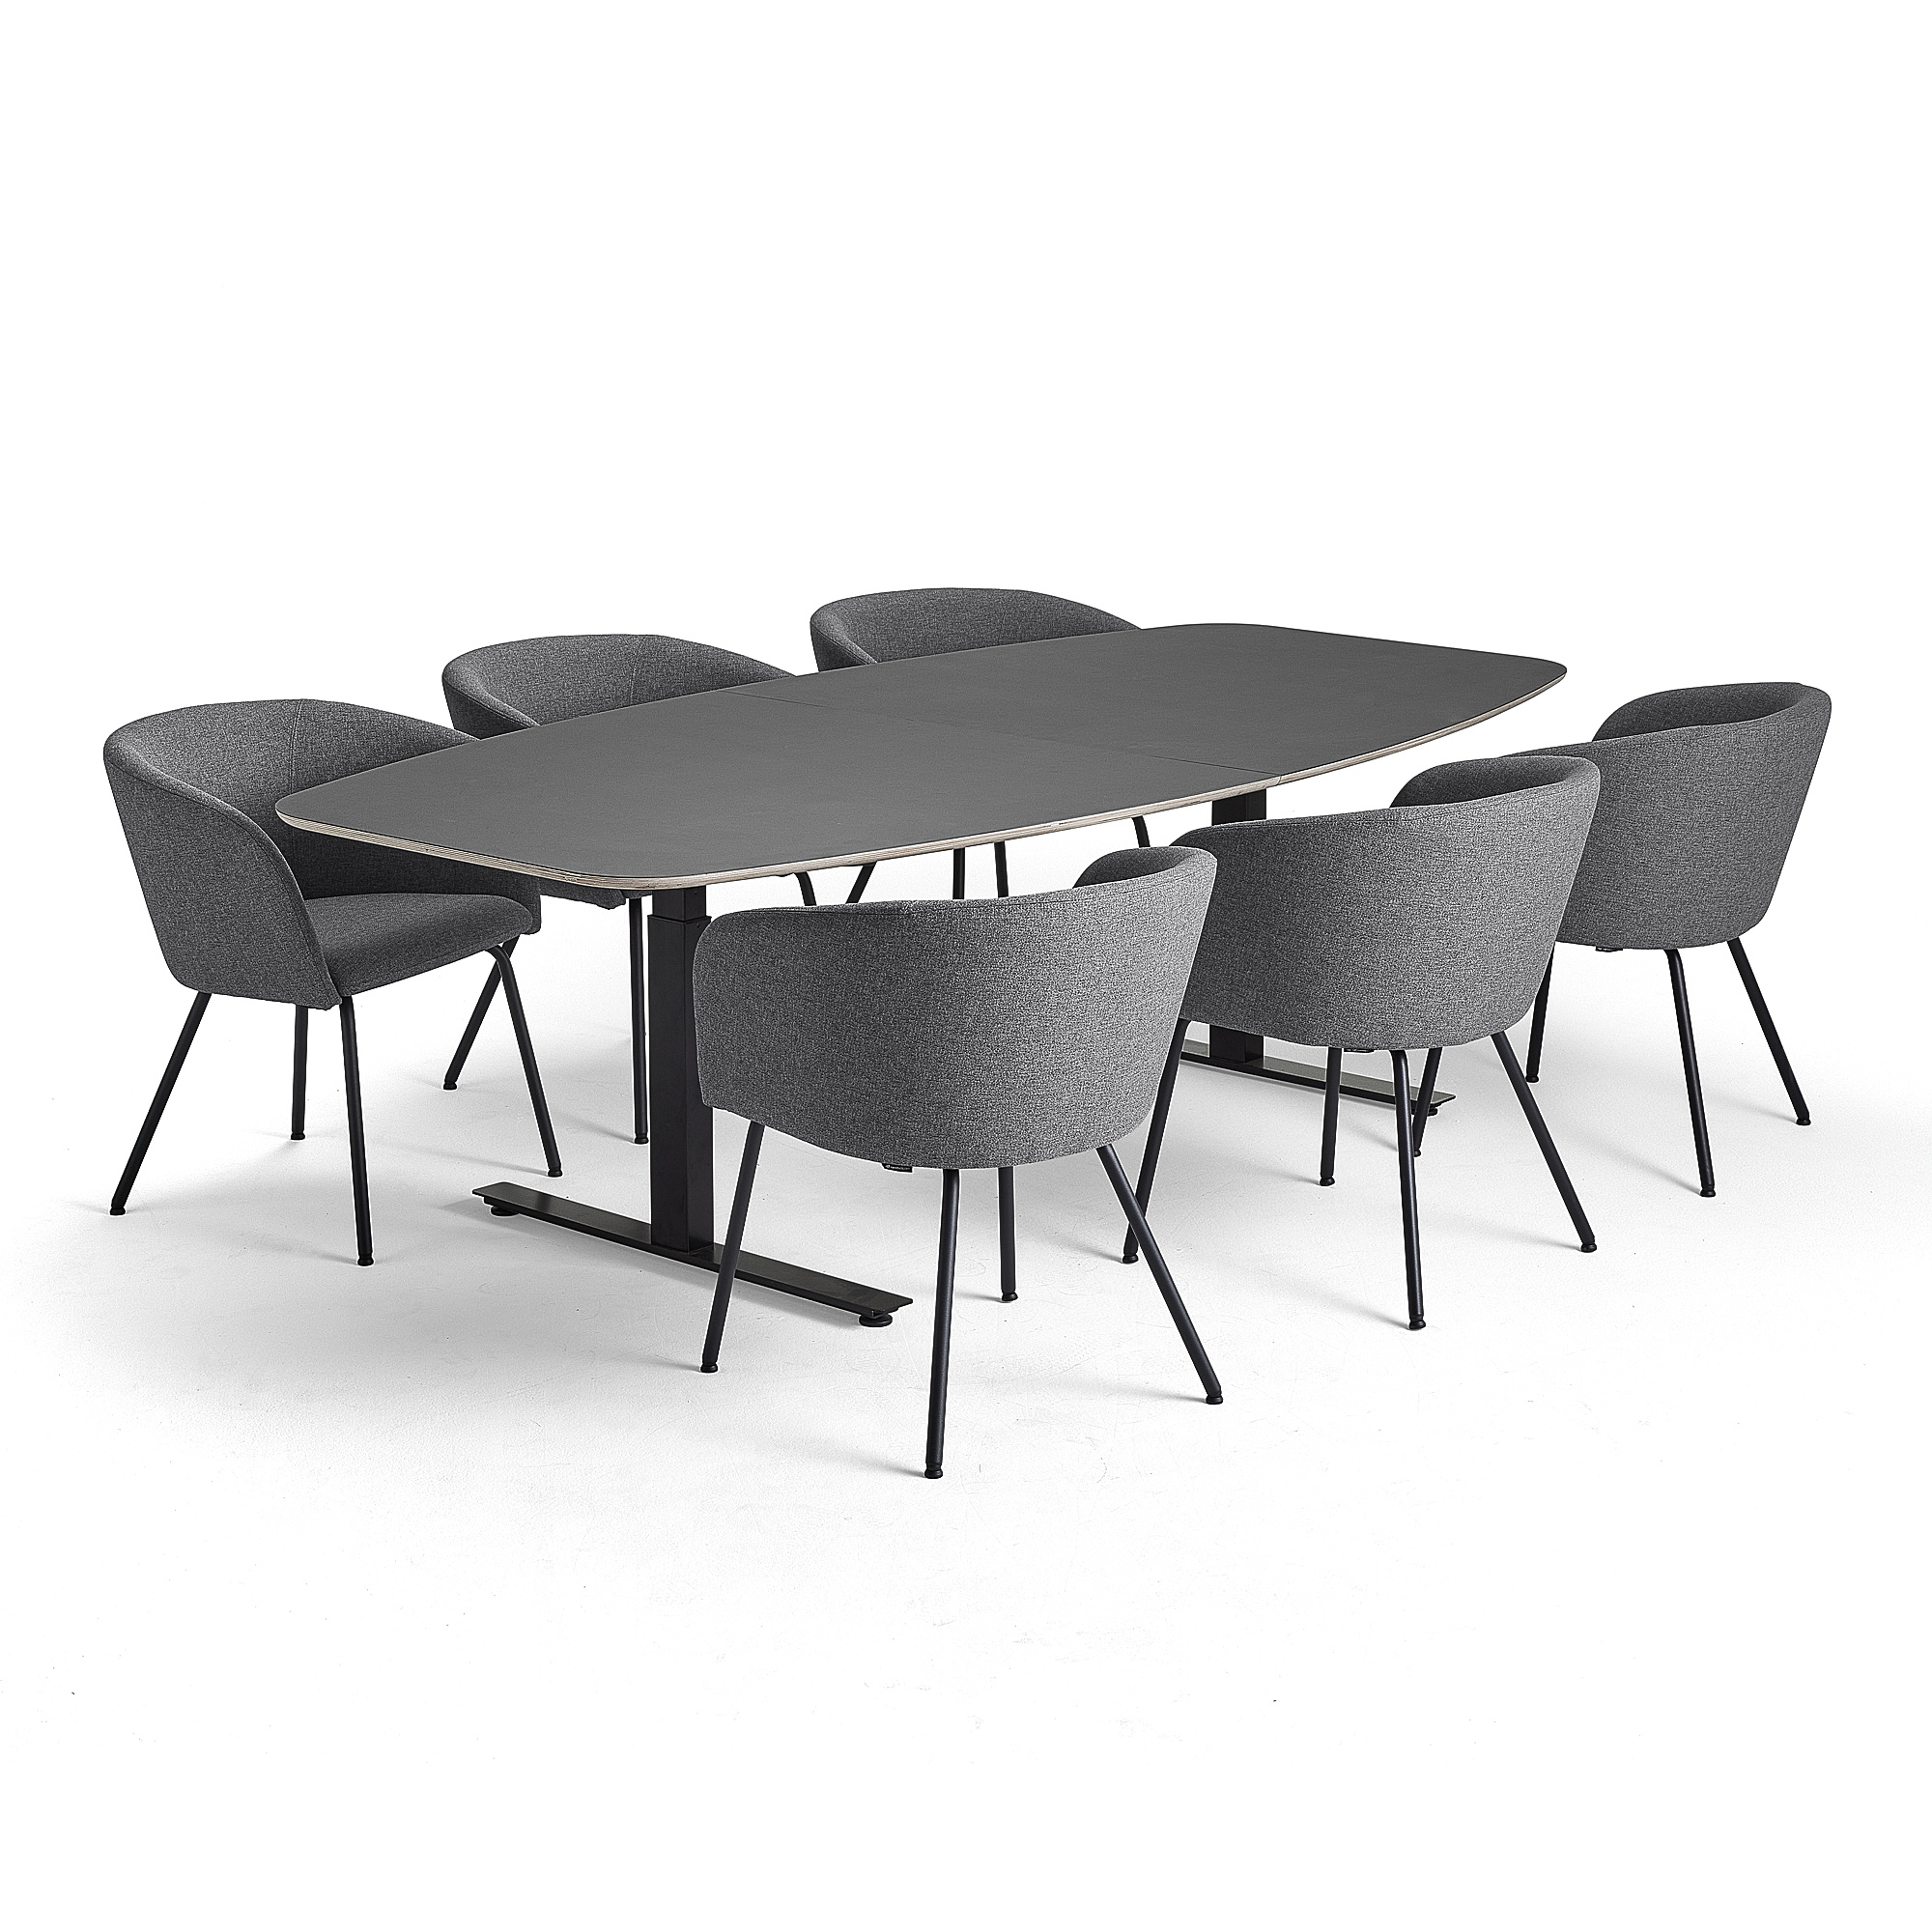 Rokovací nábytok AUDREY + HAPPY, 1 tmavohnedý stôl + 6 stoličiek, svetlošedá